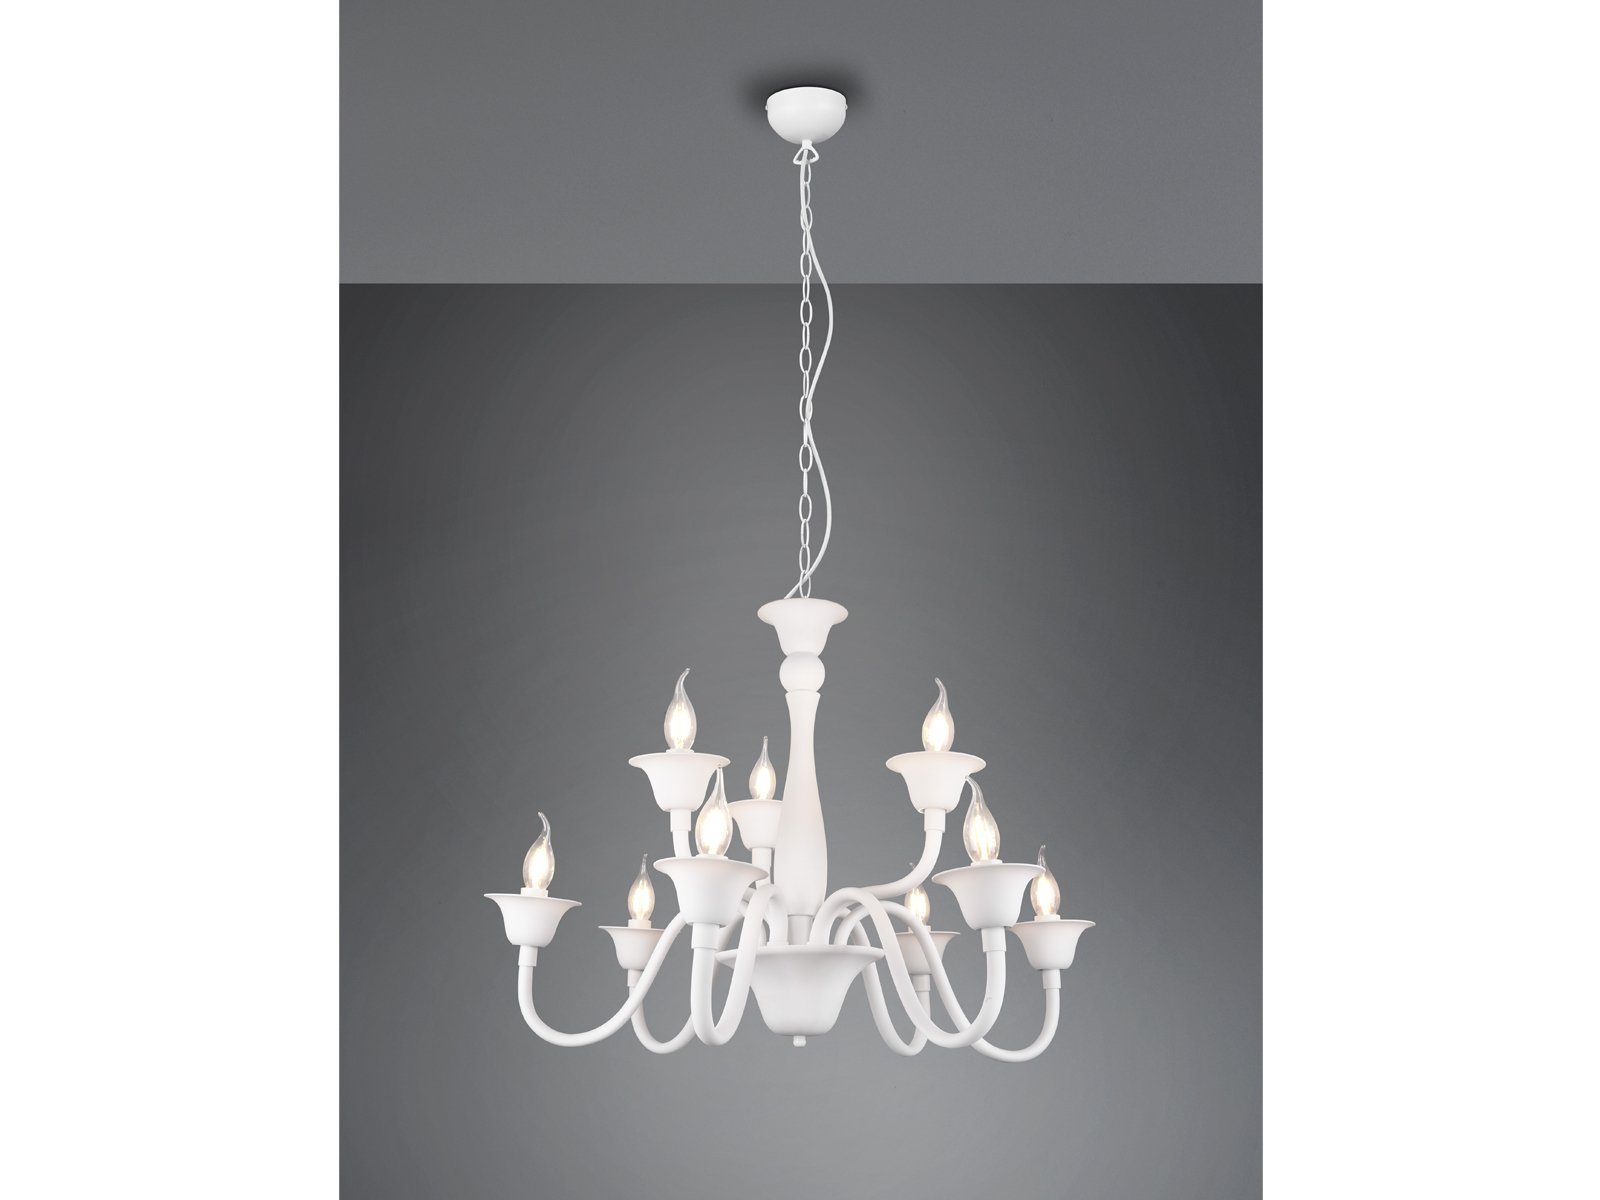 Metall Große-r wechselbar, 9-flammige Vintage Lampe 72cm Weiß, Ø warmweiß, meineWunschleuchte Kronleuchter, LED hängend, LED